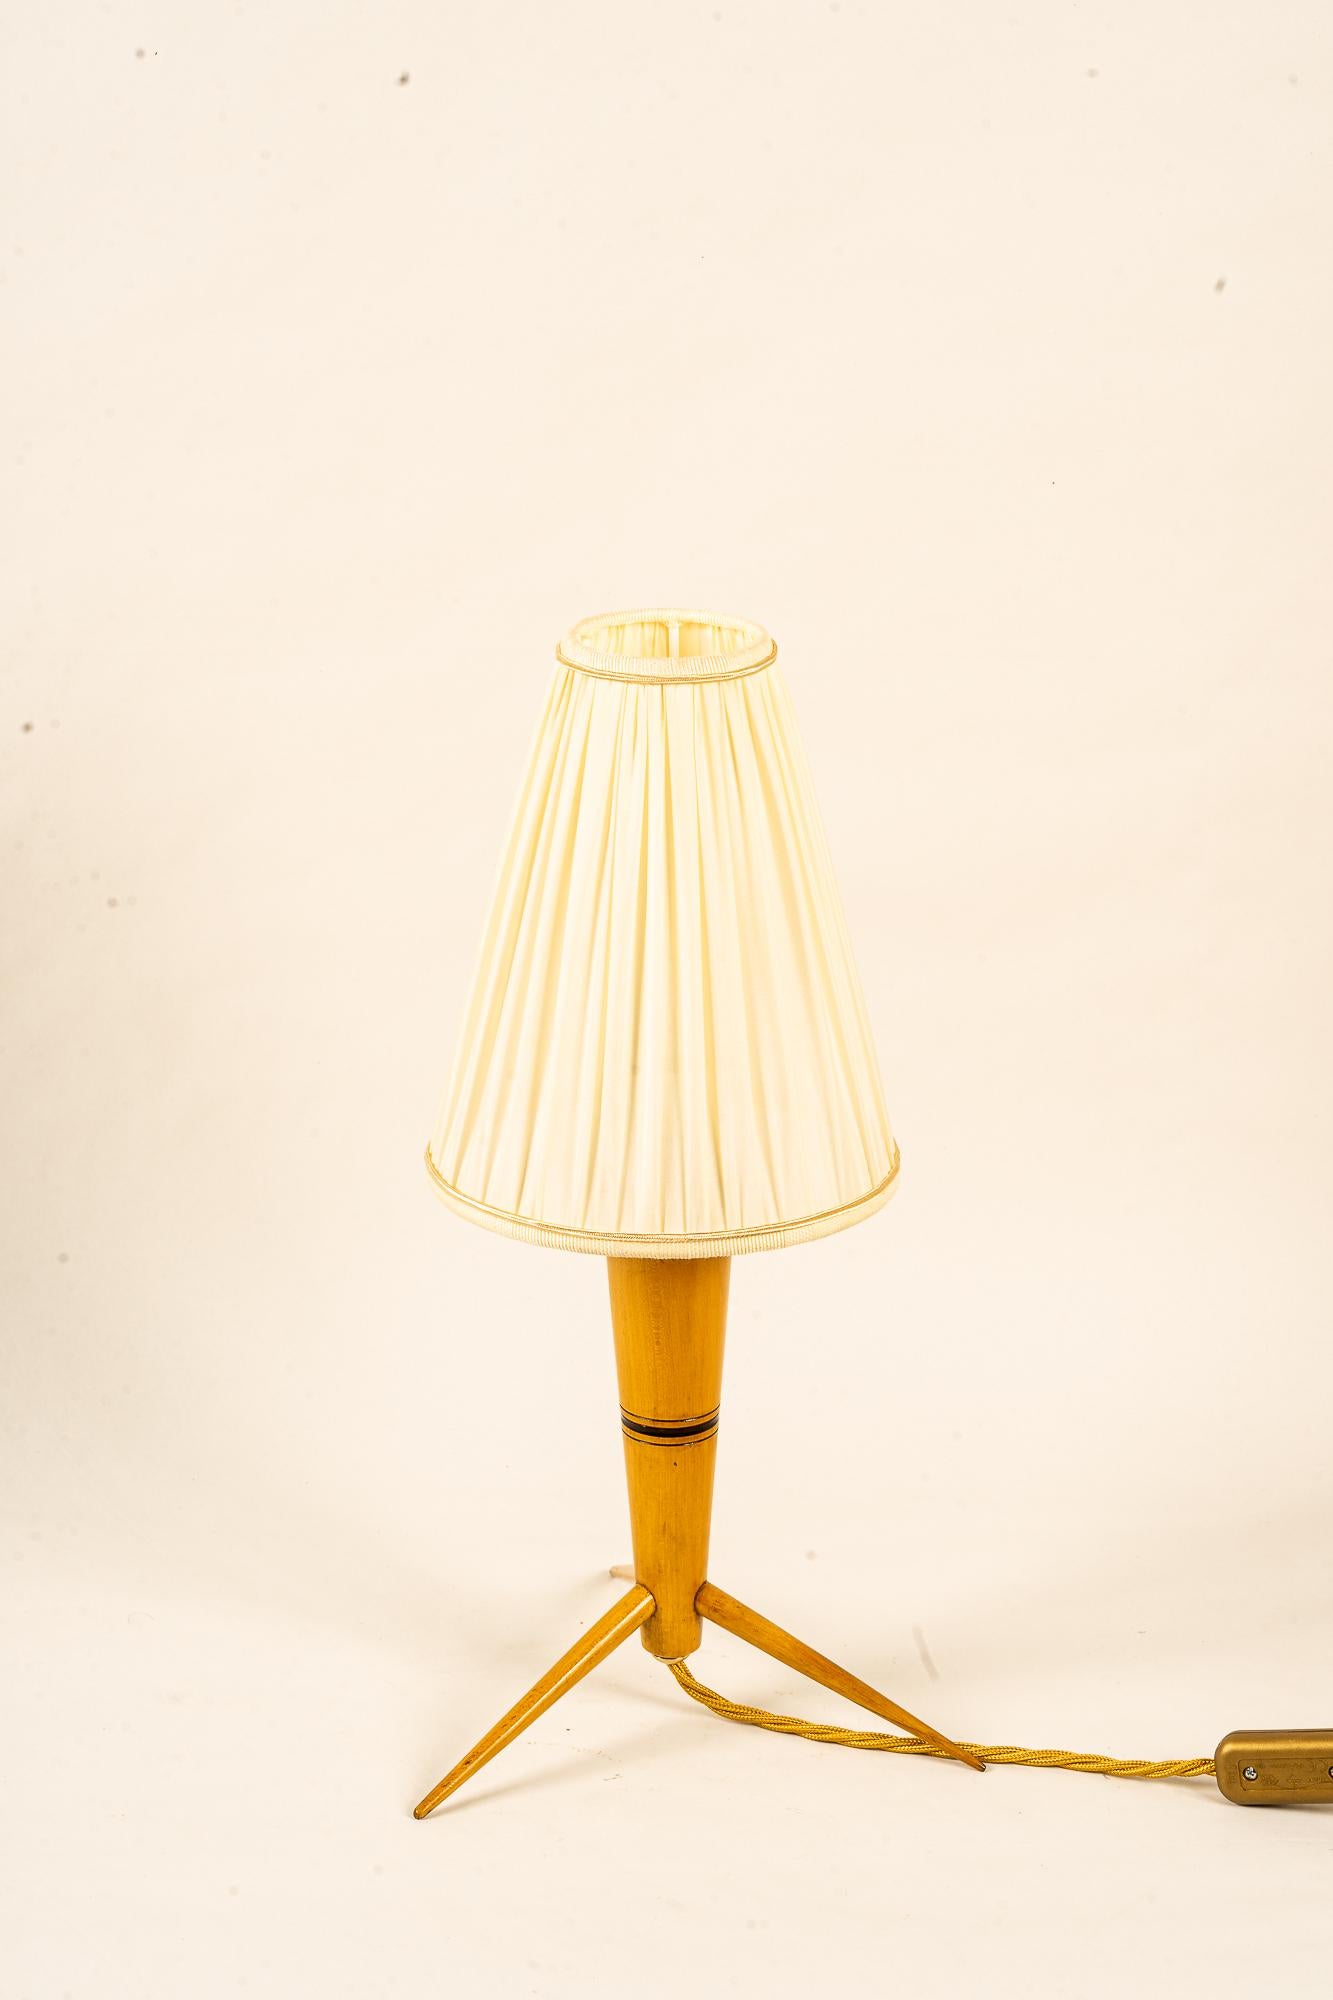 Lampe de table en bois avec abat-jour en tissu vers 1950
Etat original
Cette teinte est remplacée ( nouvelle )